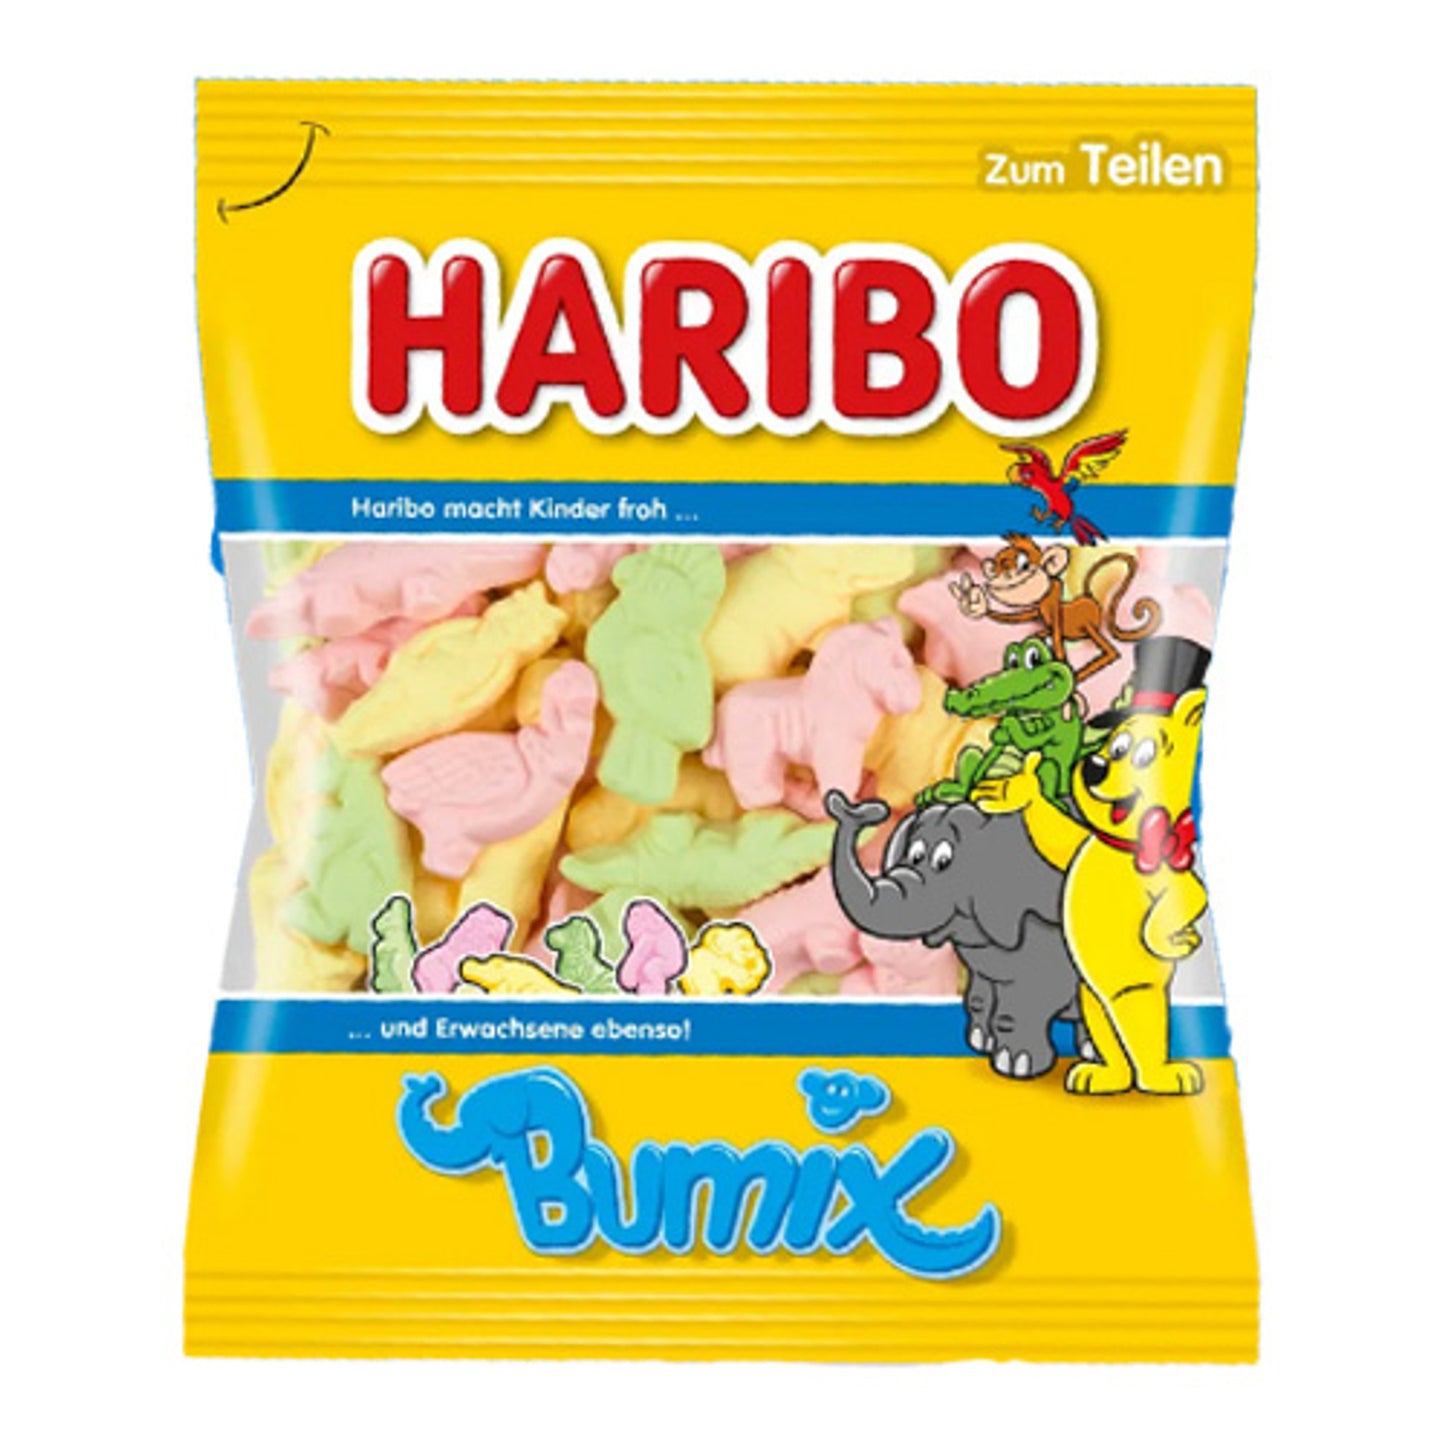 Haribo Marshmallow Animals Bag